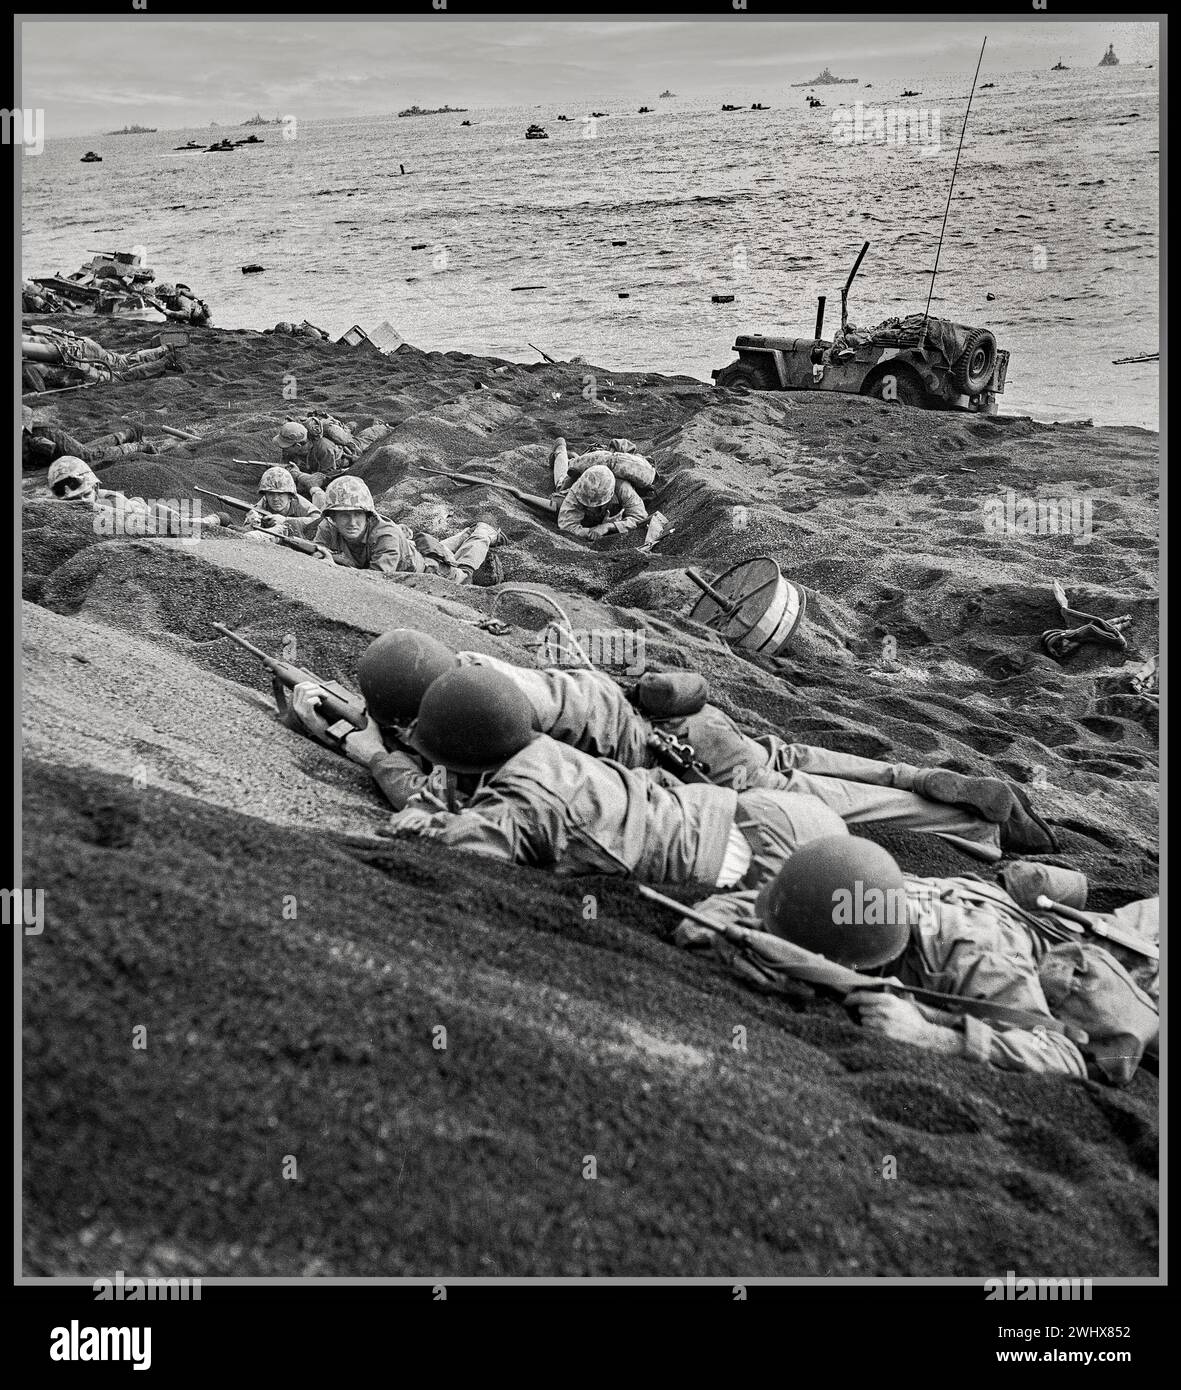 Bataille d'Iwo Jima lors de la seconde Guerre mondiale. Les Marines américains se mettent à l'abri sous le feu intense des forces impériales japonaises sur la plage. La bataille d'Iwo Jima est une bataille majeure au cours de laquelle le corps des Marines des États-Unis et la marine des États-Unis débarquent et finissent par capturer l'île d'Iwo Jima de l'armée impériale japonaise pendant la seconde Guerre mondiale Banque D'Images